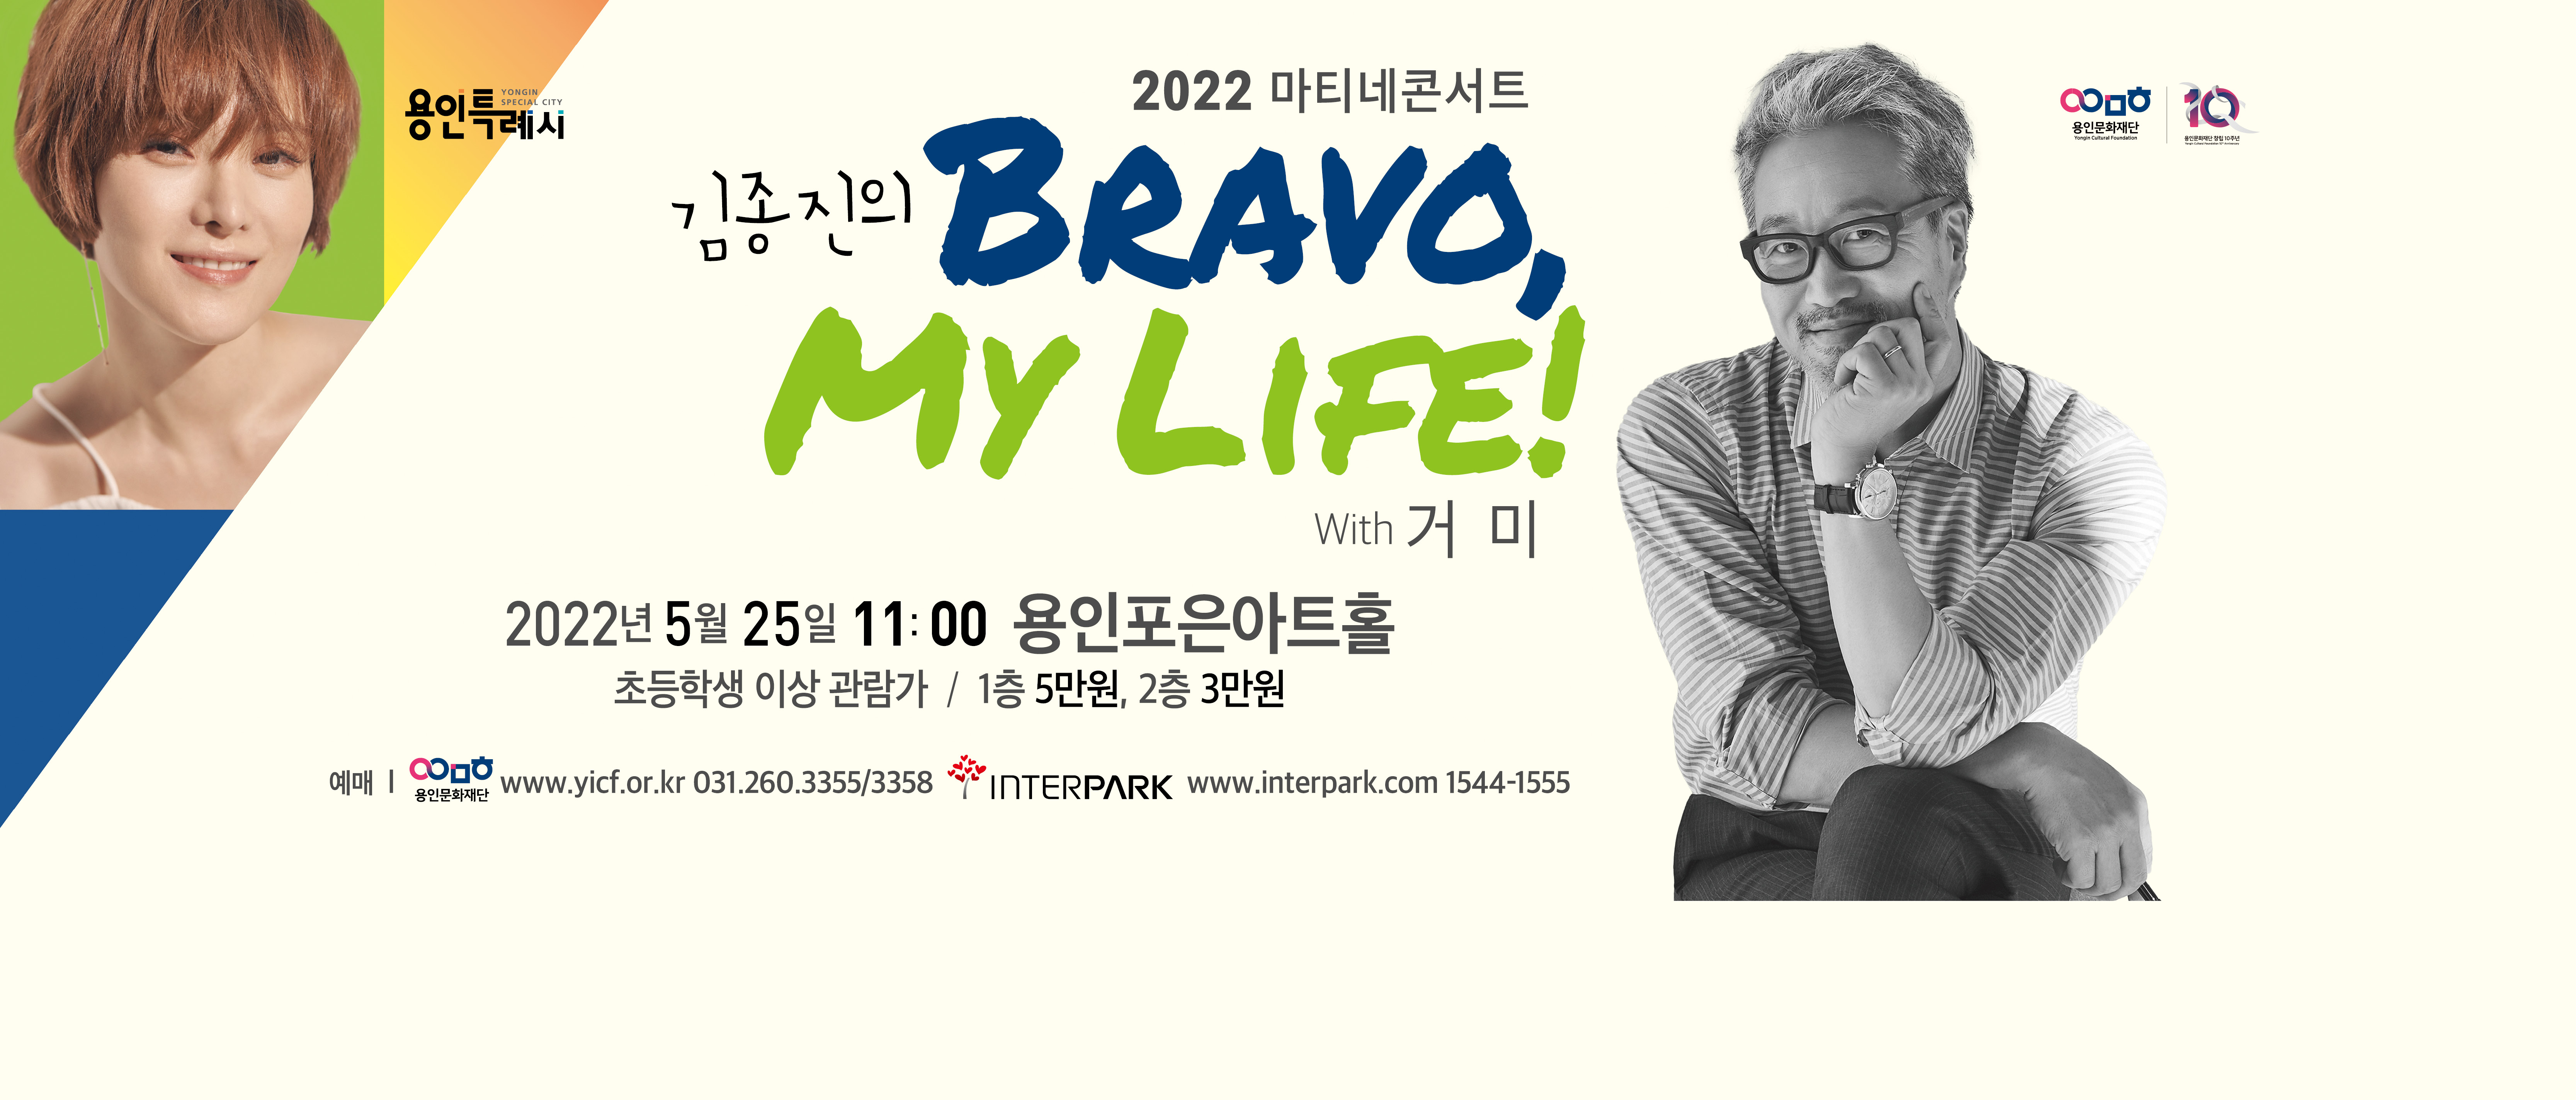 김종진의 브라보 마이 라이프 with 거미
2022년 5월 25일 수요일 11시 
용인포은아트홀
초등학생이상 관람가
1층 5만원, 2층 3만원